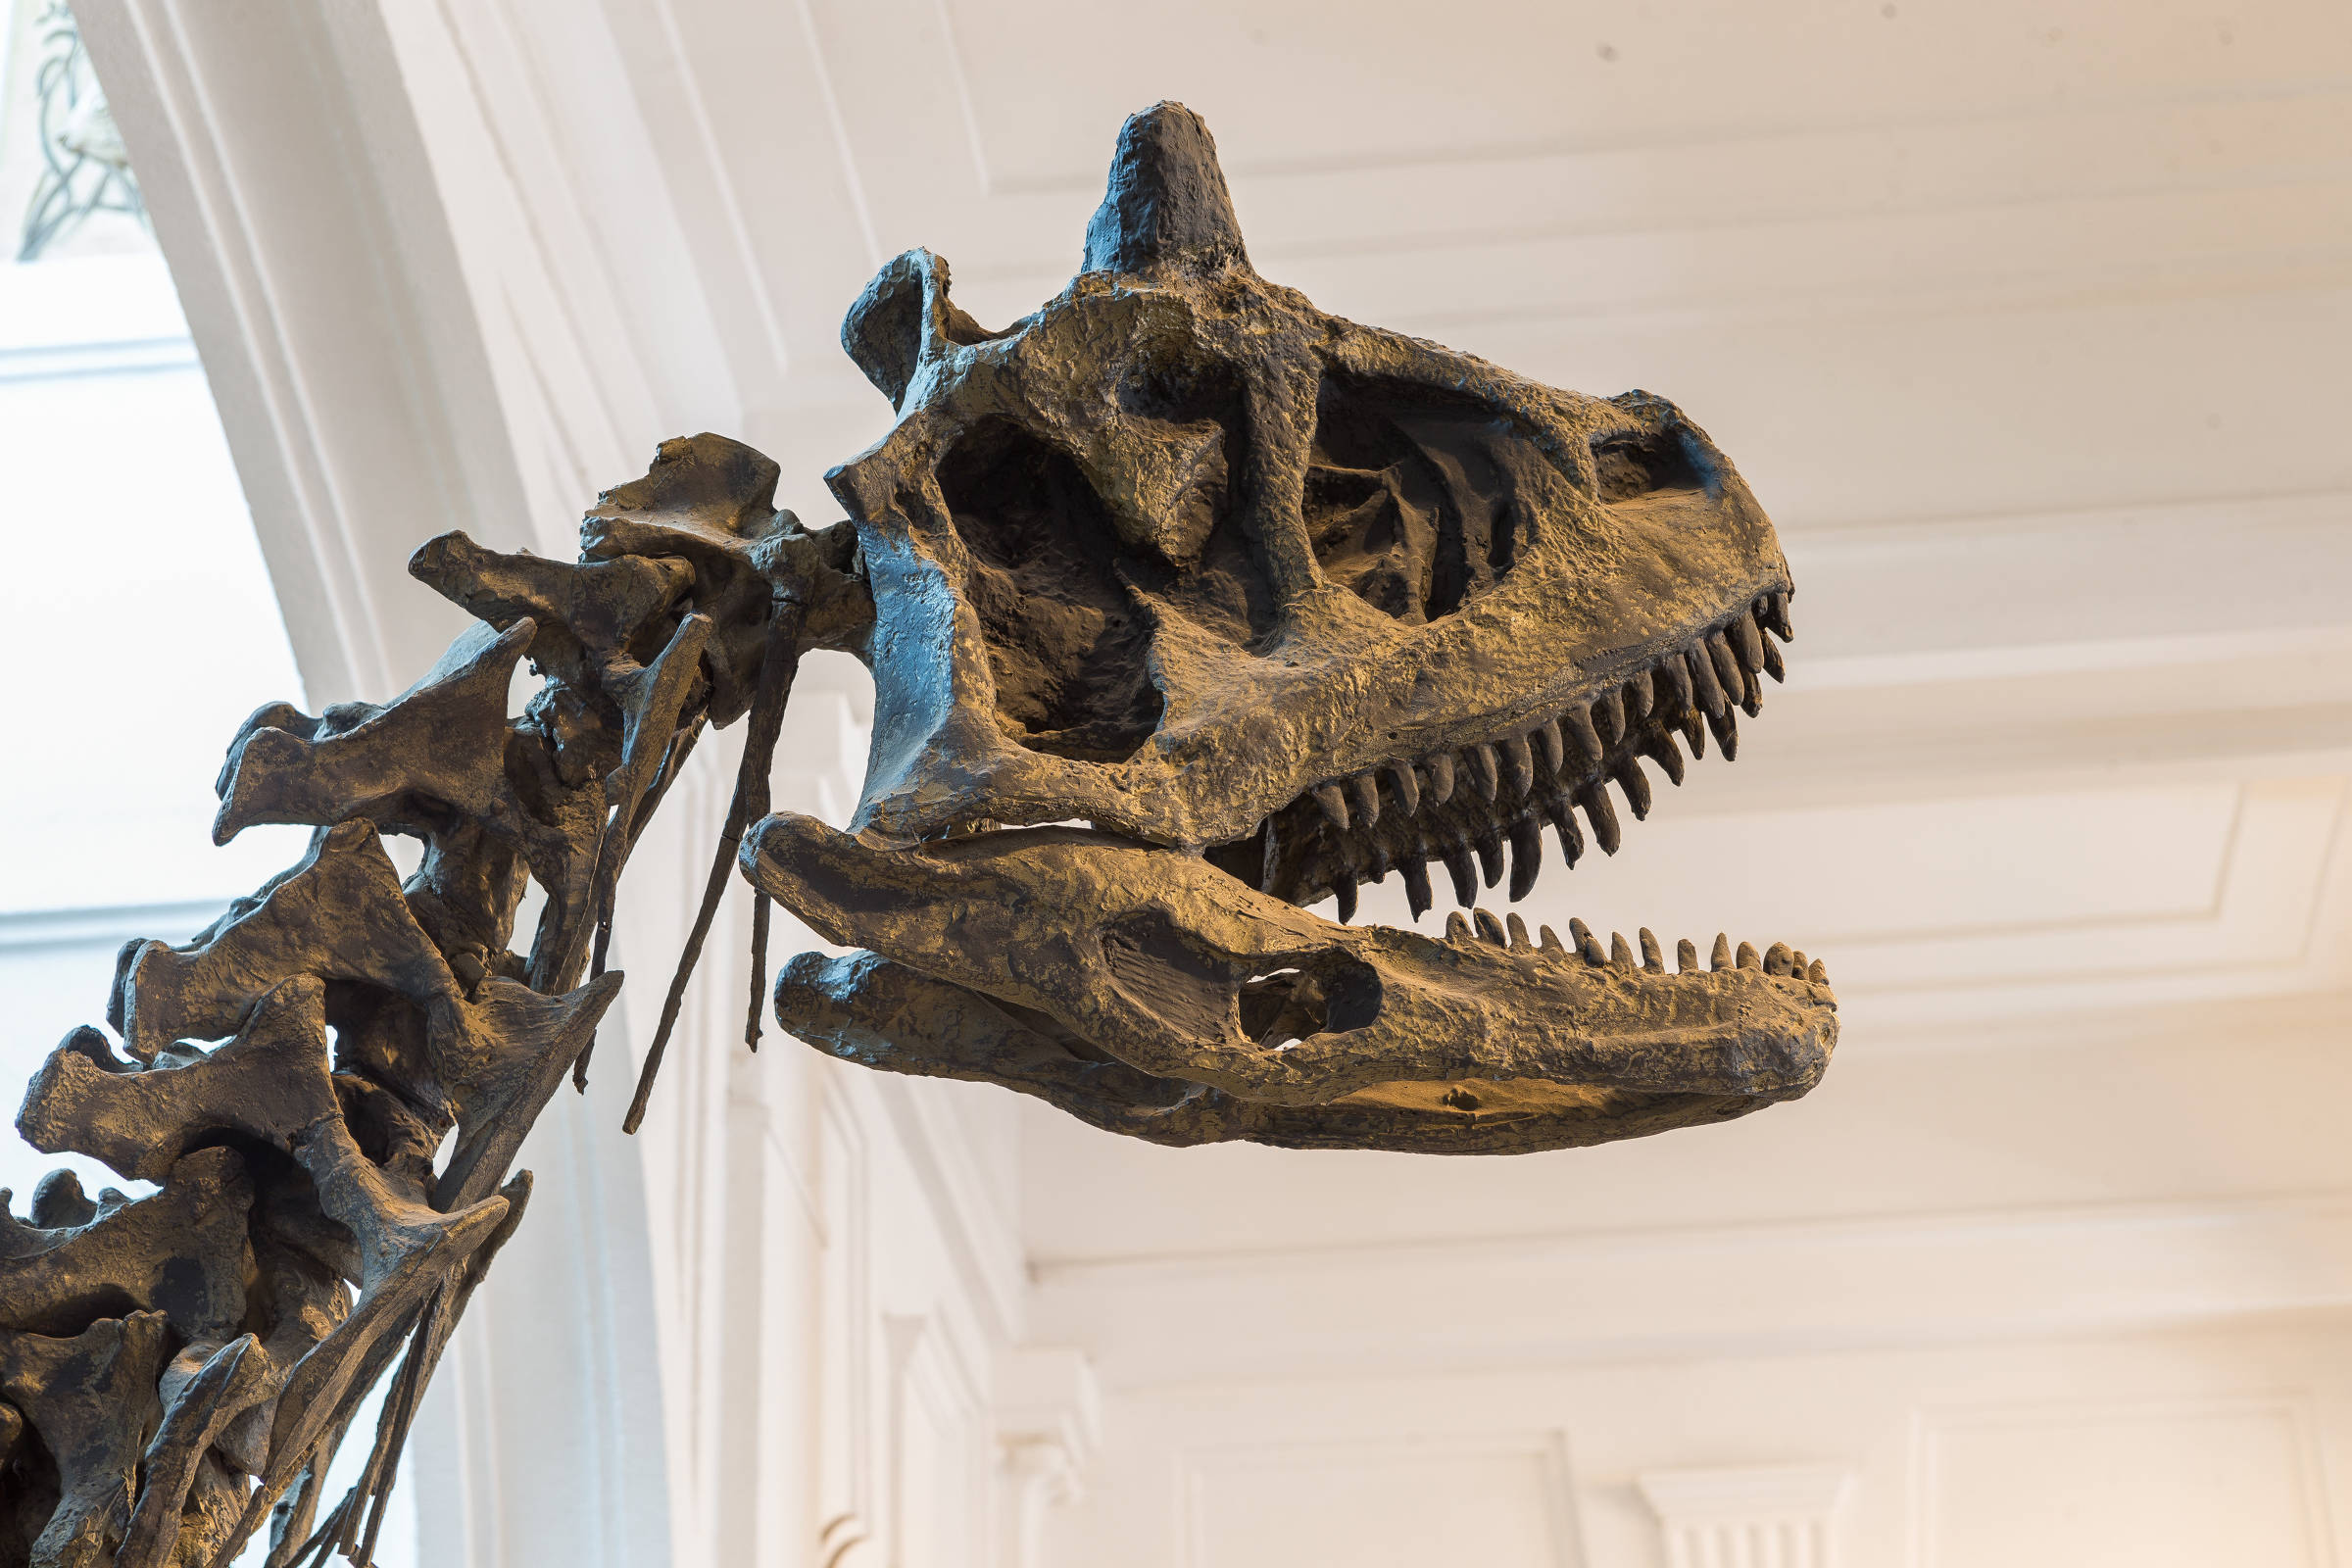 Dinossauro gigante, com 10 metros de altura, é atração em shopping